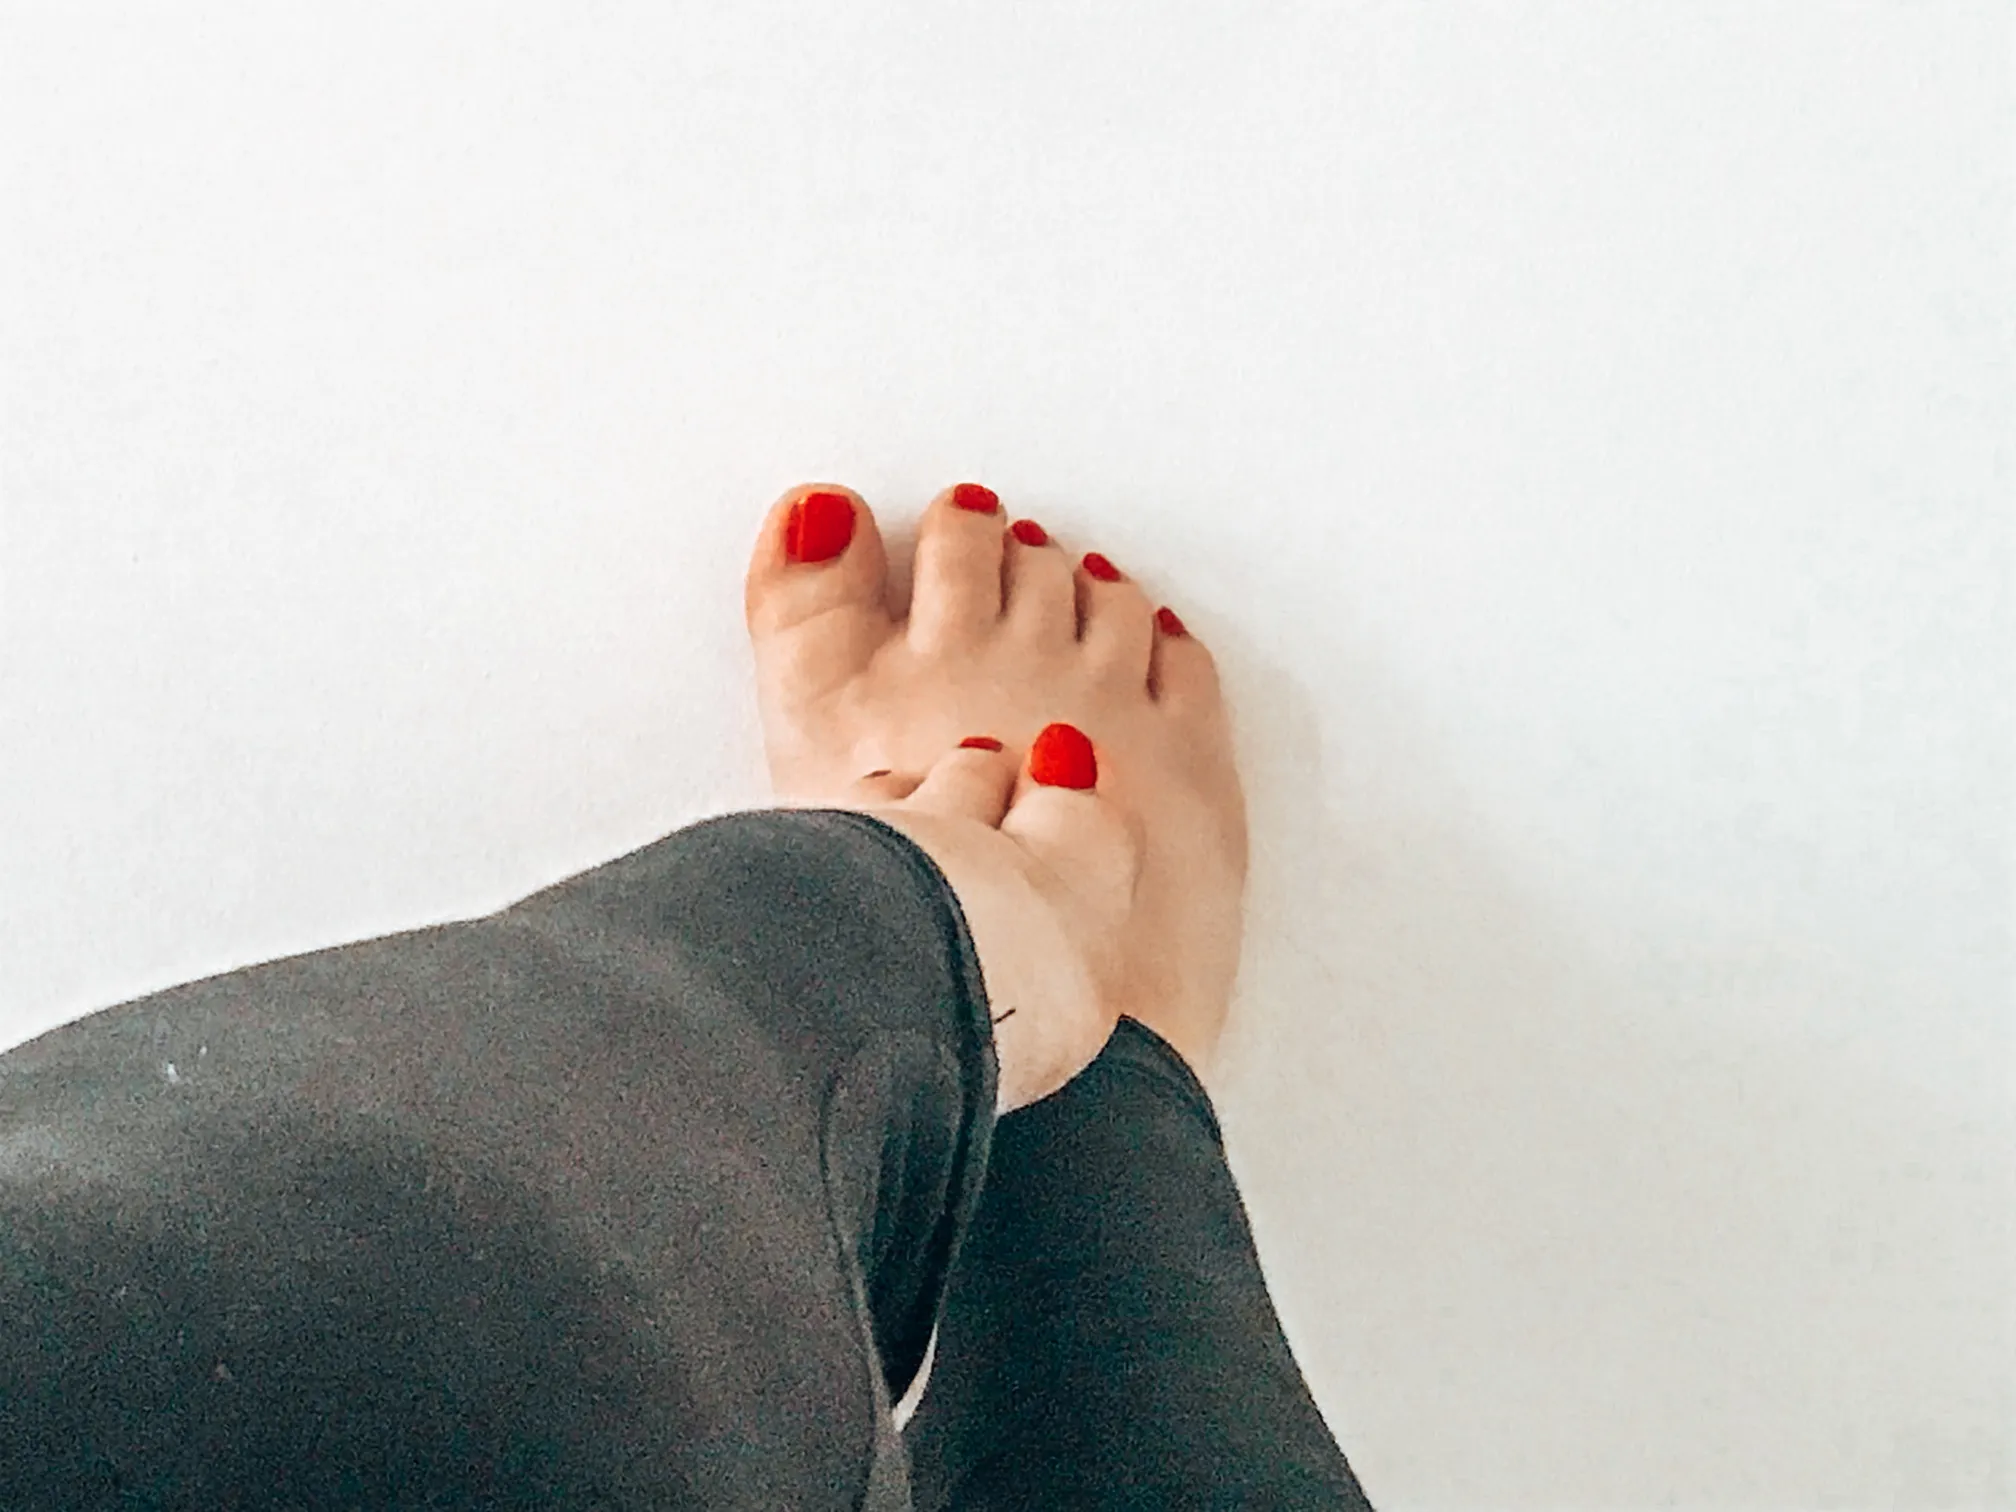 Sonia’s feet 🦶🏻